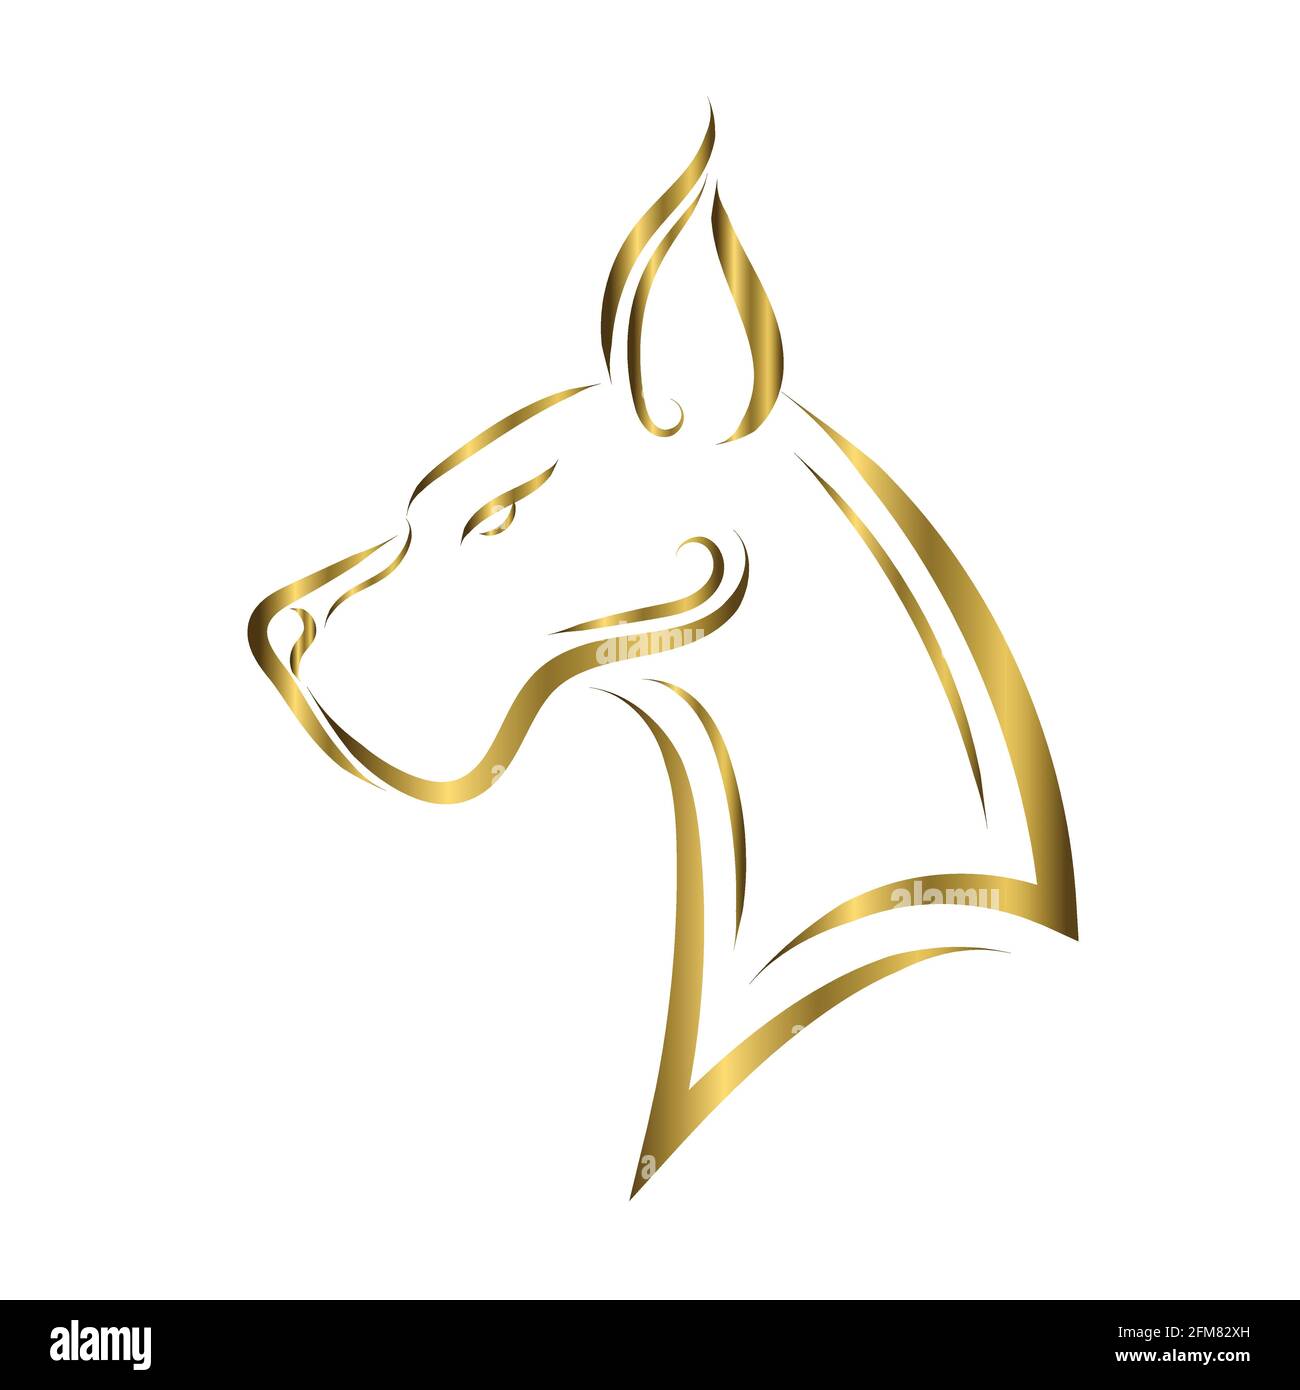 L'art de la ligne d'or de la tête de chien de Great Dane. Bon usage pour symbole, mascotte, icône, avatar, tatouage, T-shirt, logo ou tout autre motif que vous voulez Illustration de Vecteur